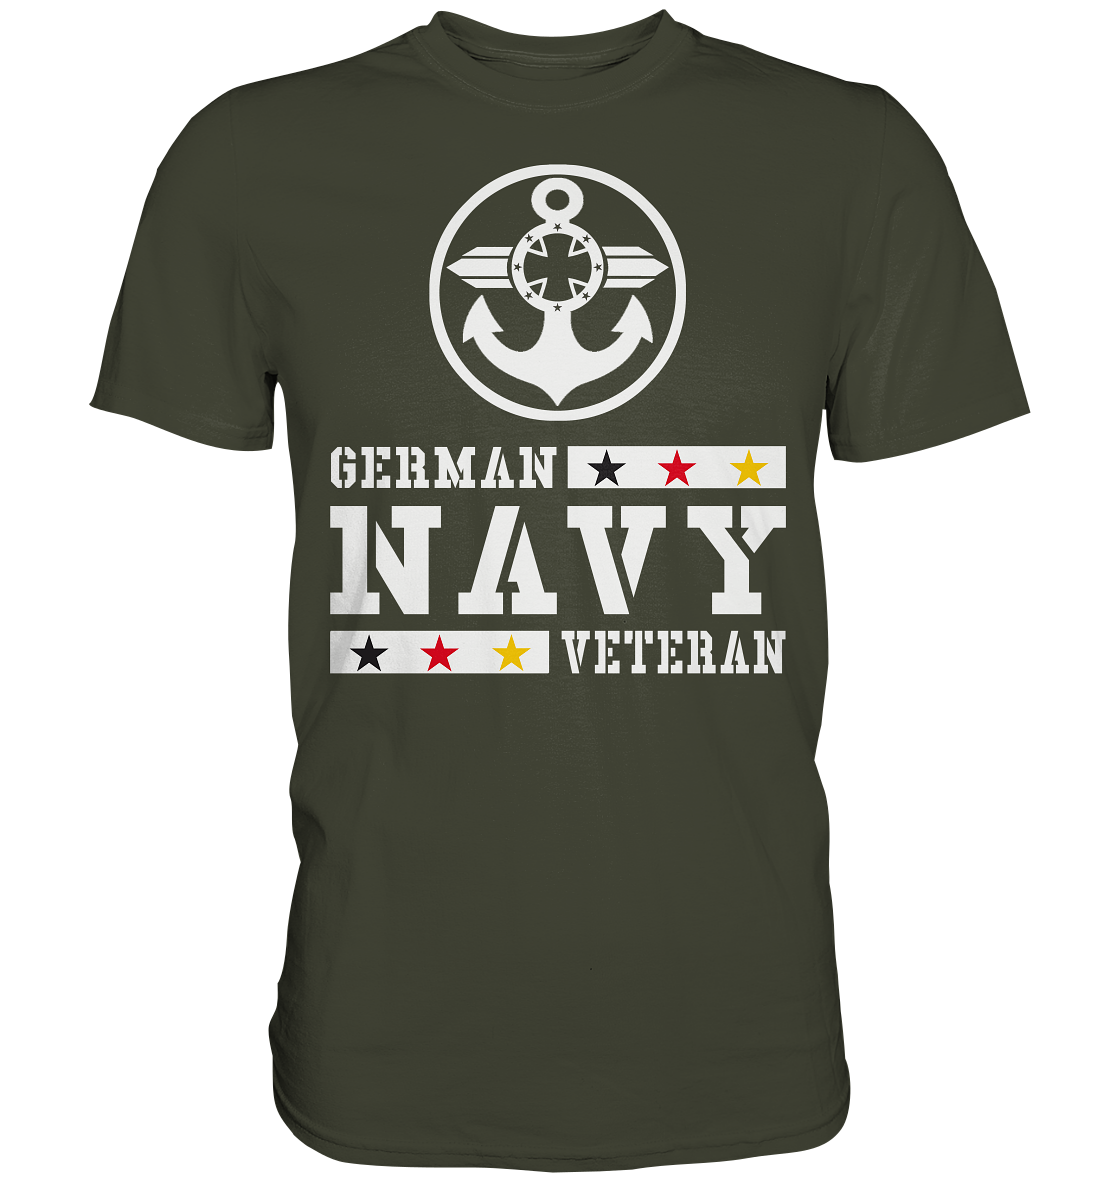 GERMAN NAVY VETERAN ANKER - Premium Shirt